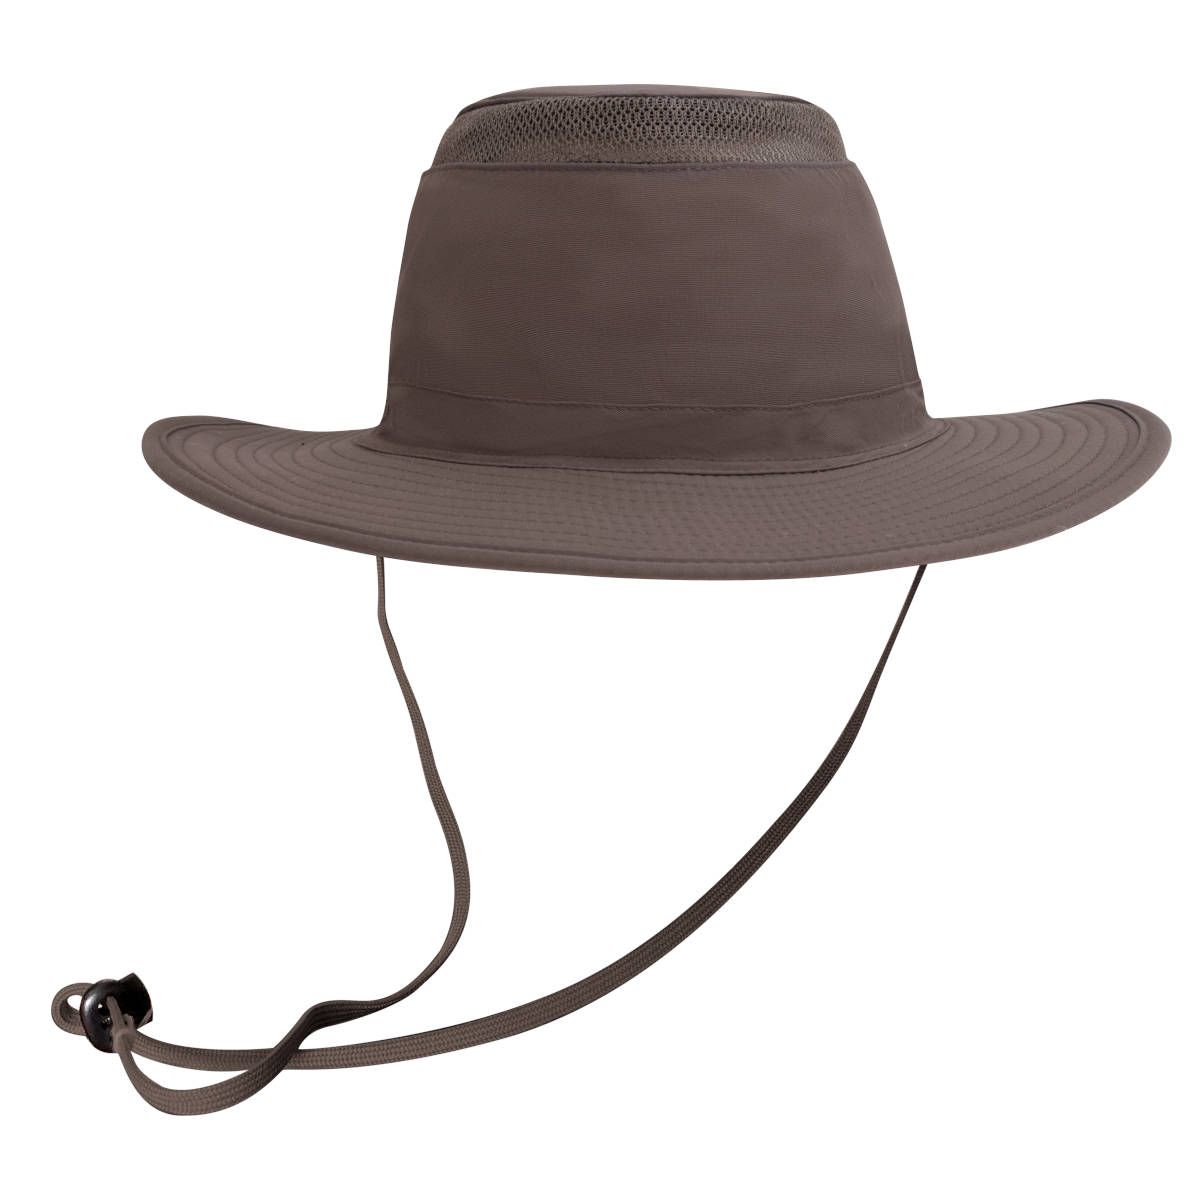 Sombrero Para Sol Con Protección Upf+50 Y Bolsa Oculta café - Productos